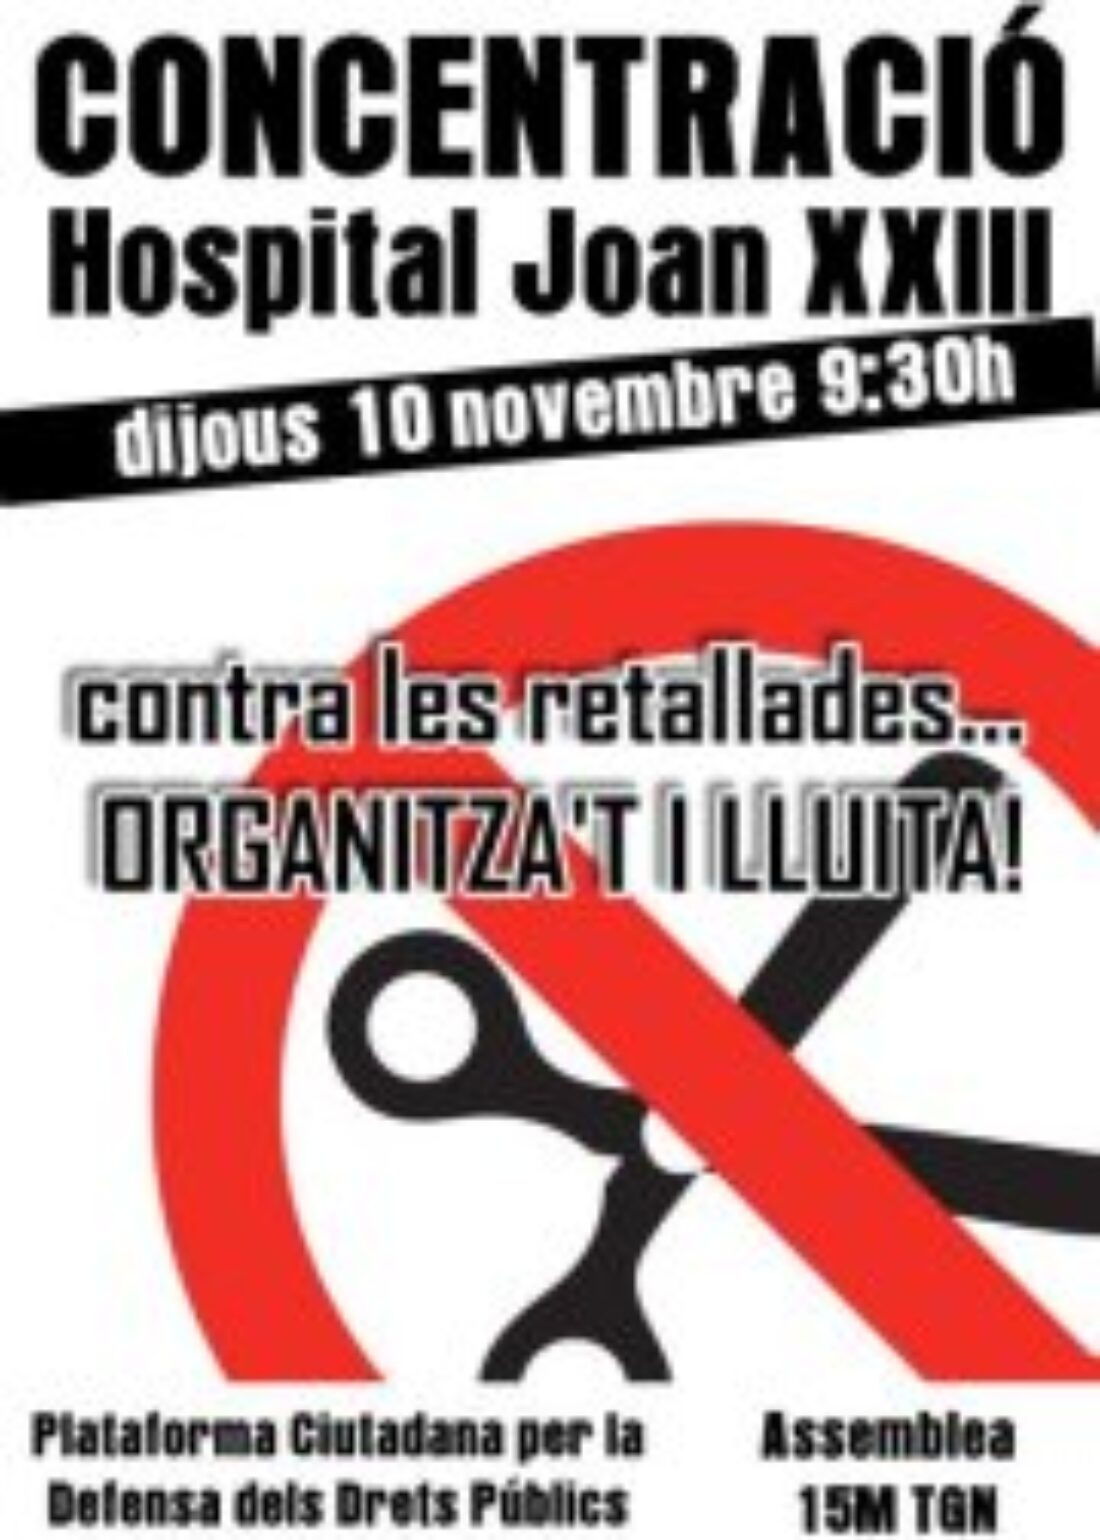 Tarragona: Concentración en el Hospital Joan XXIII contra los recortes